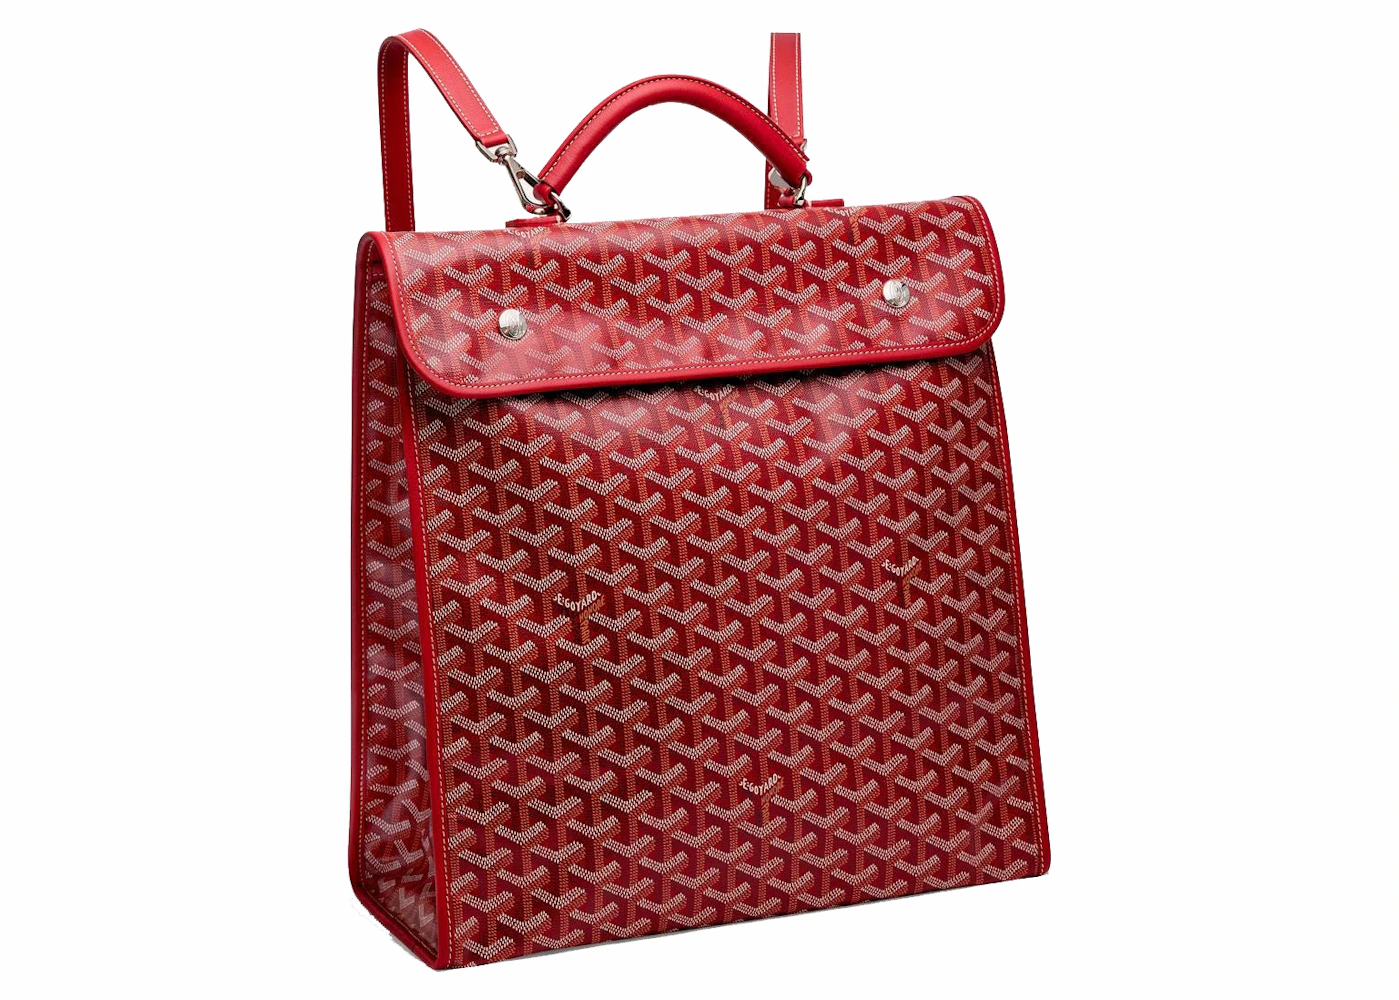 Louis Vuitton Straps & Accessories for Purses, Bags, Wallets, SLGs – Mautto